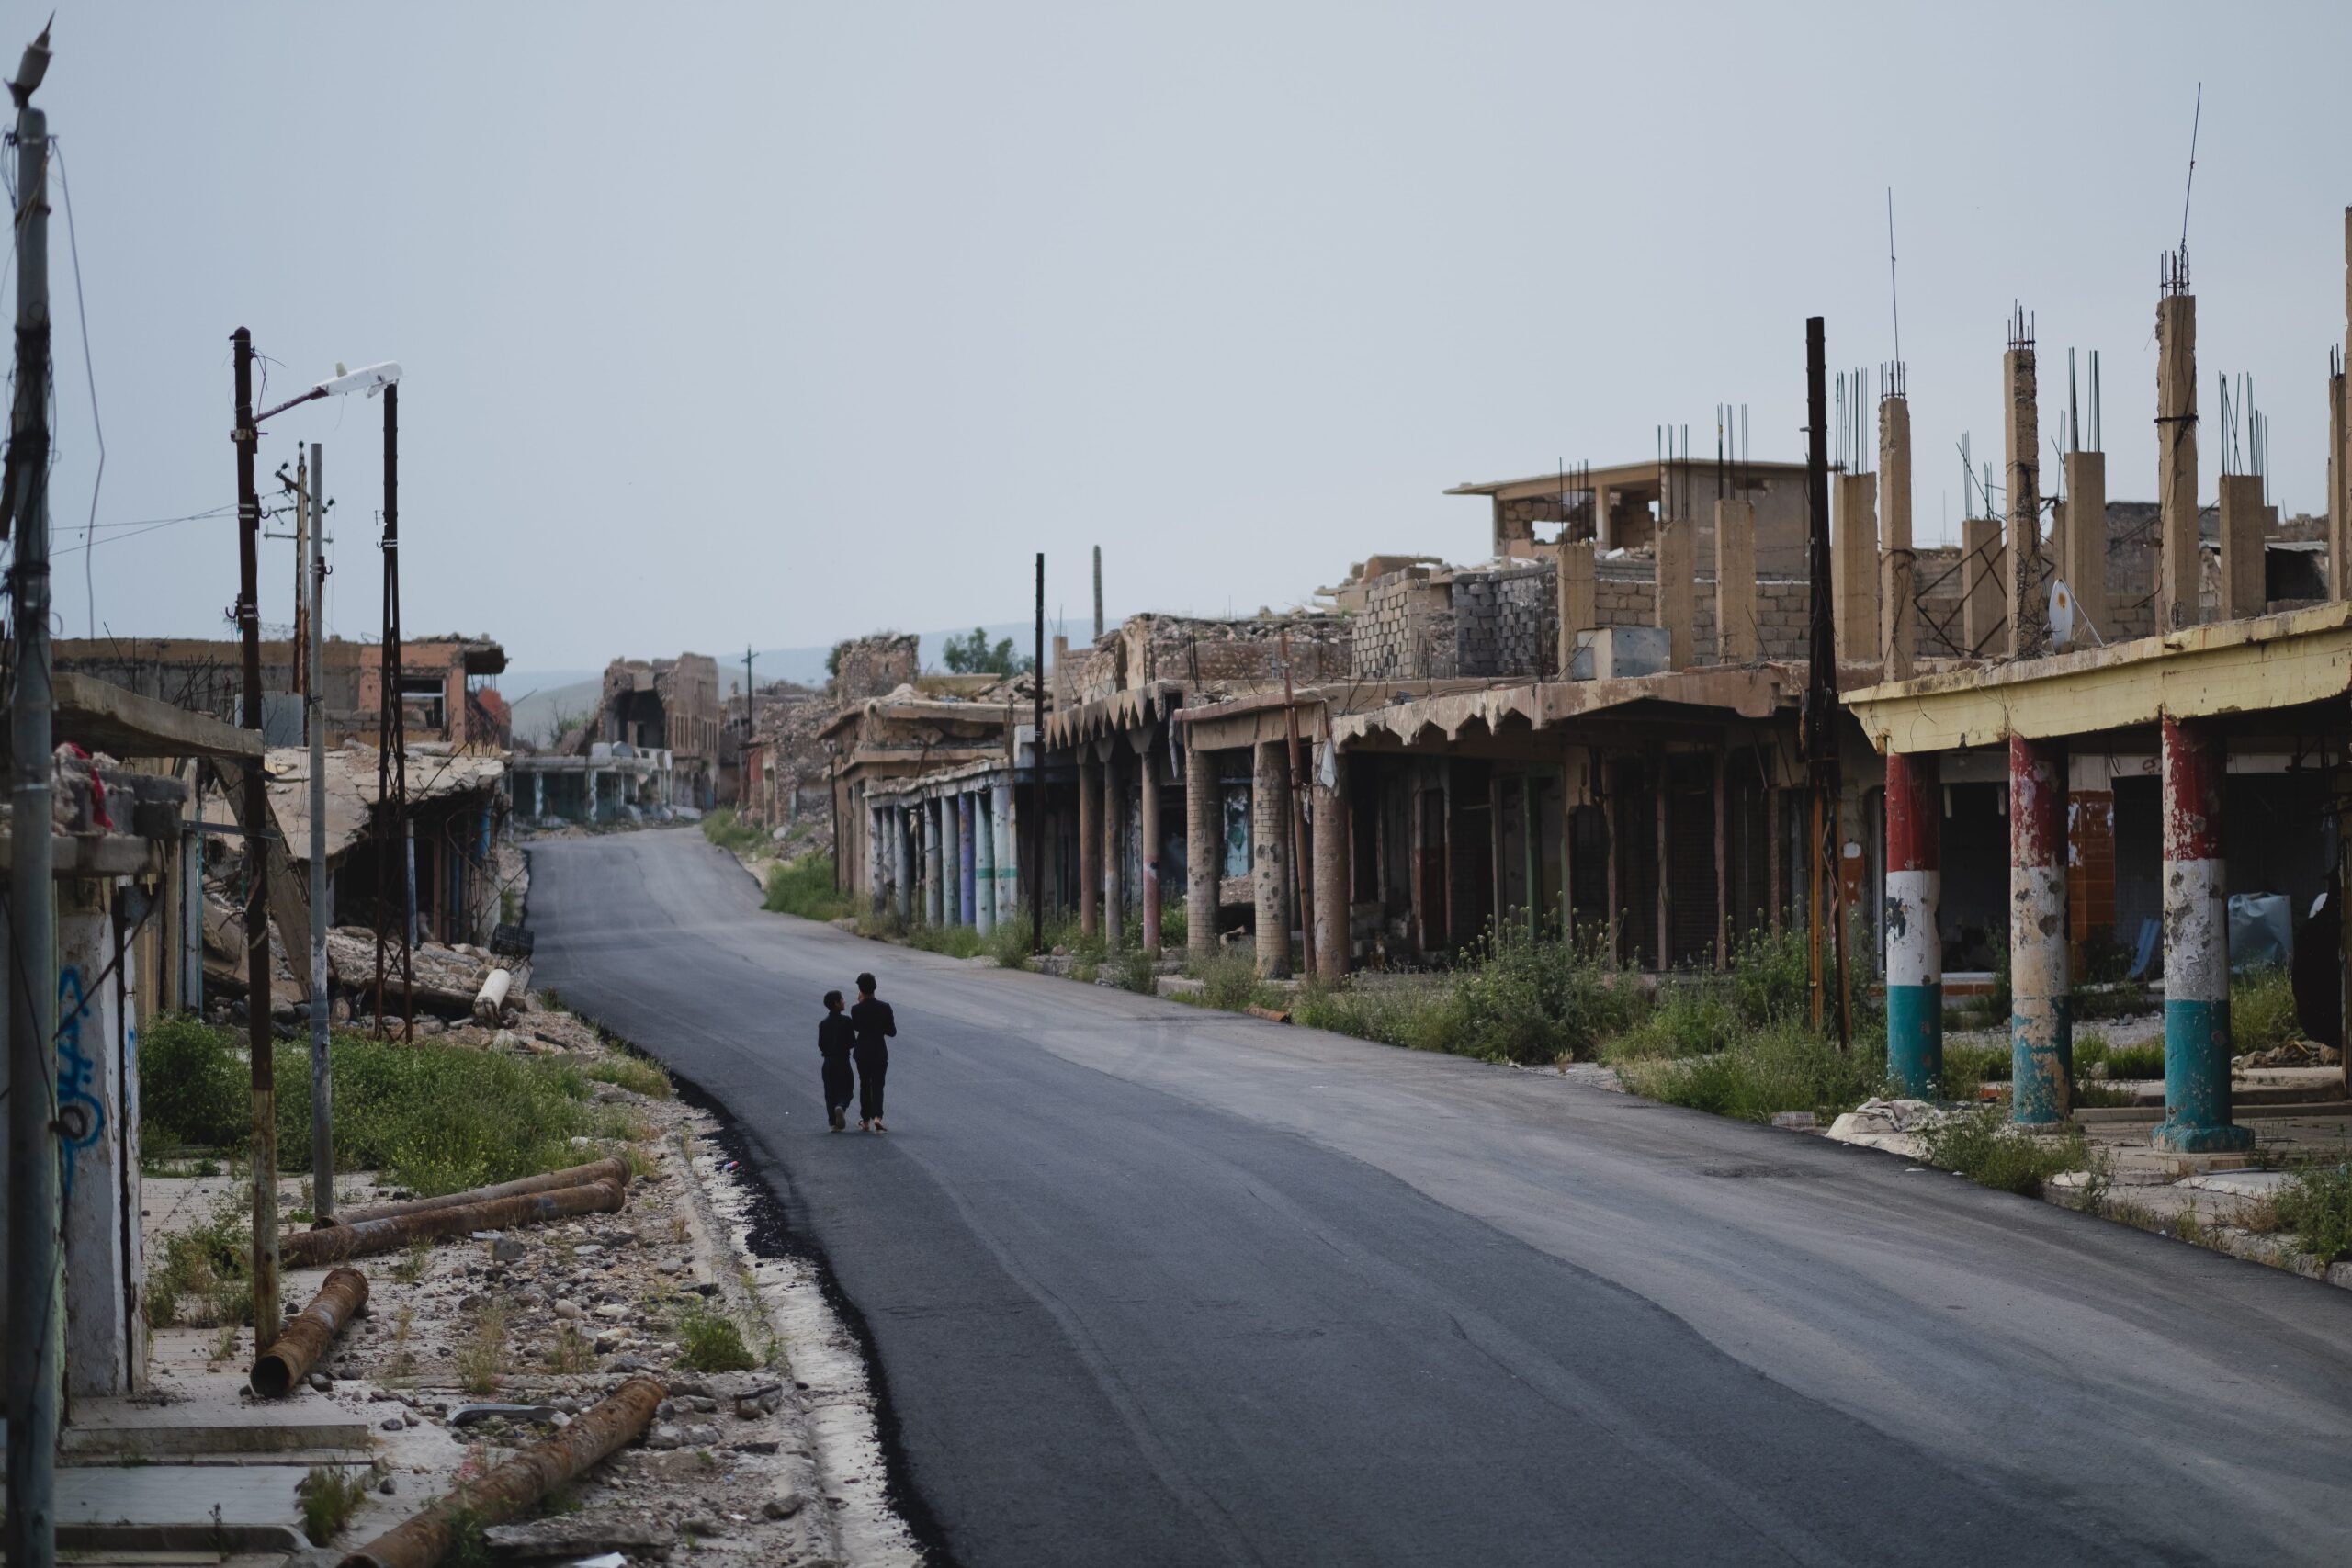 Sinjar, Iraq (1)